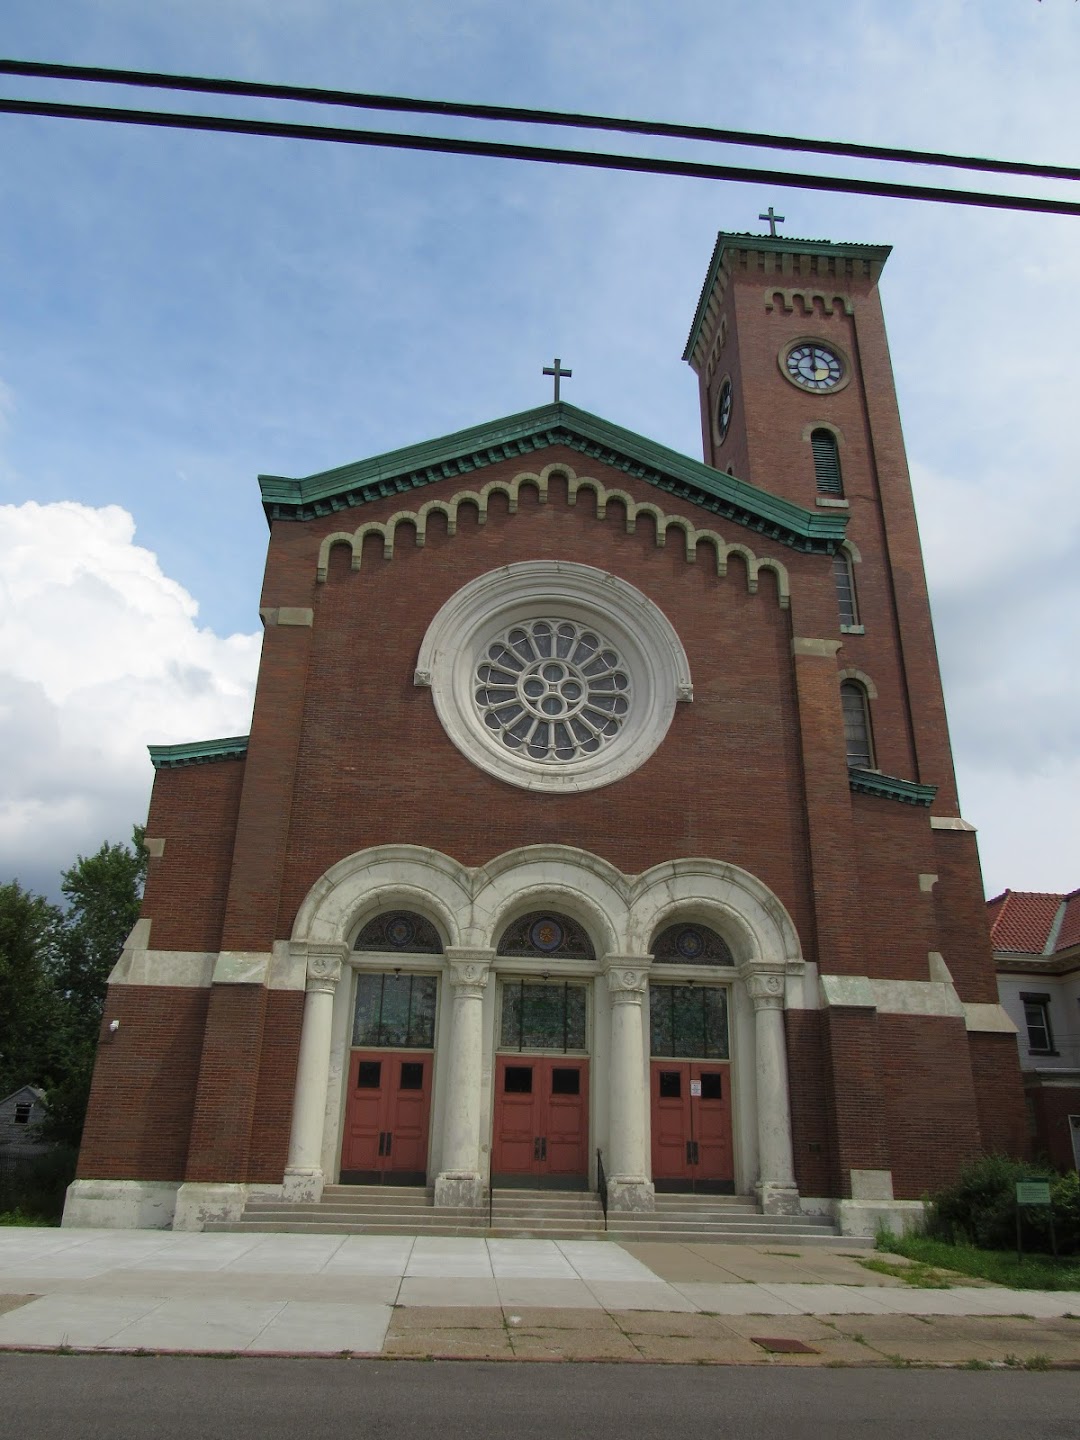 The Buffalo Religious Arts Center